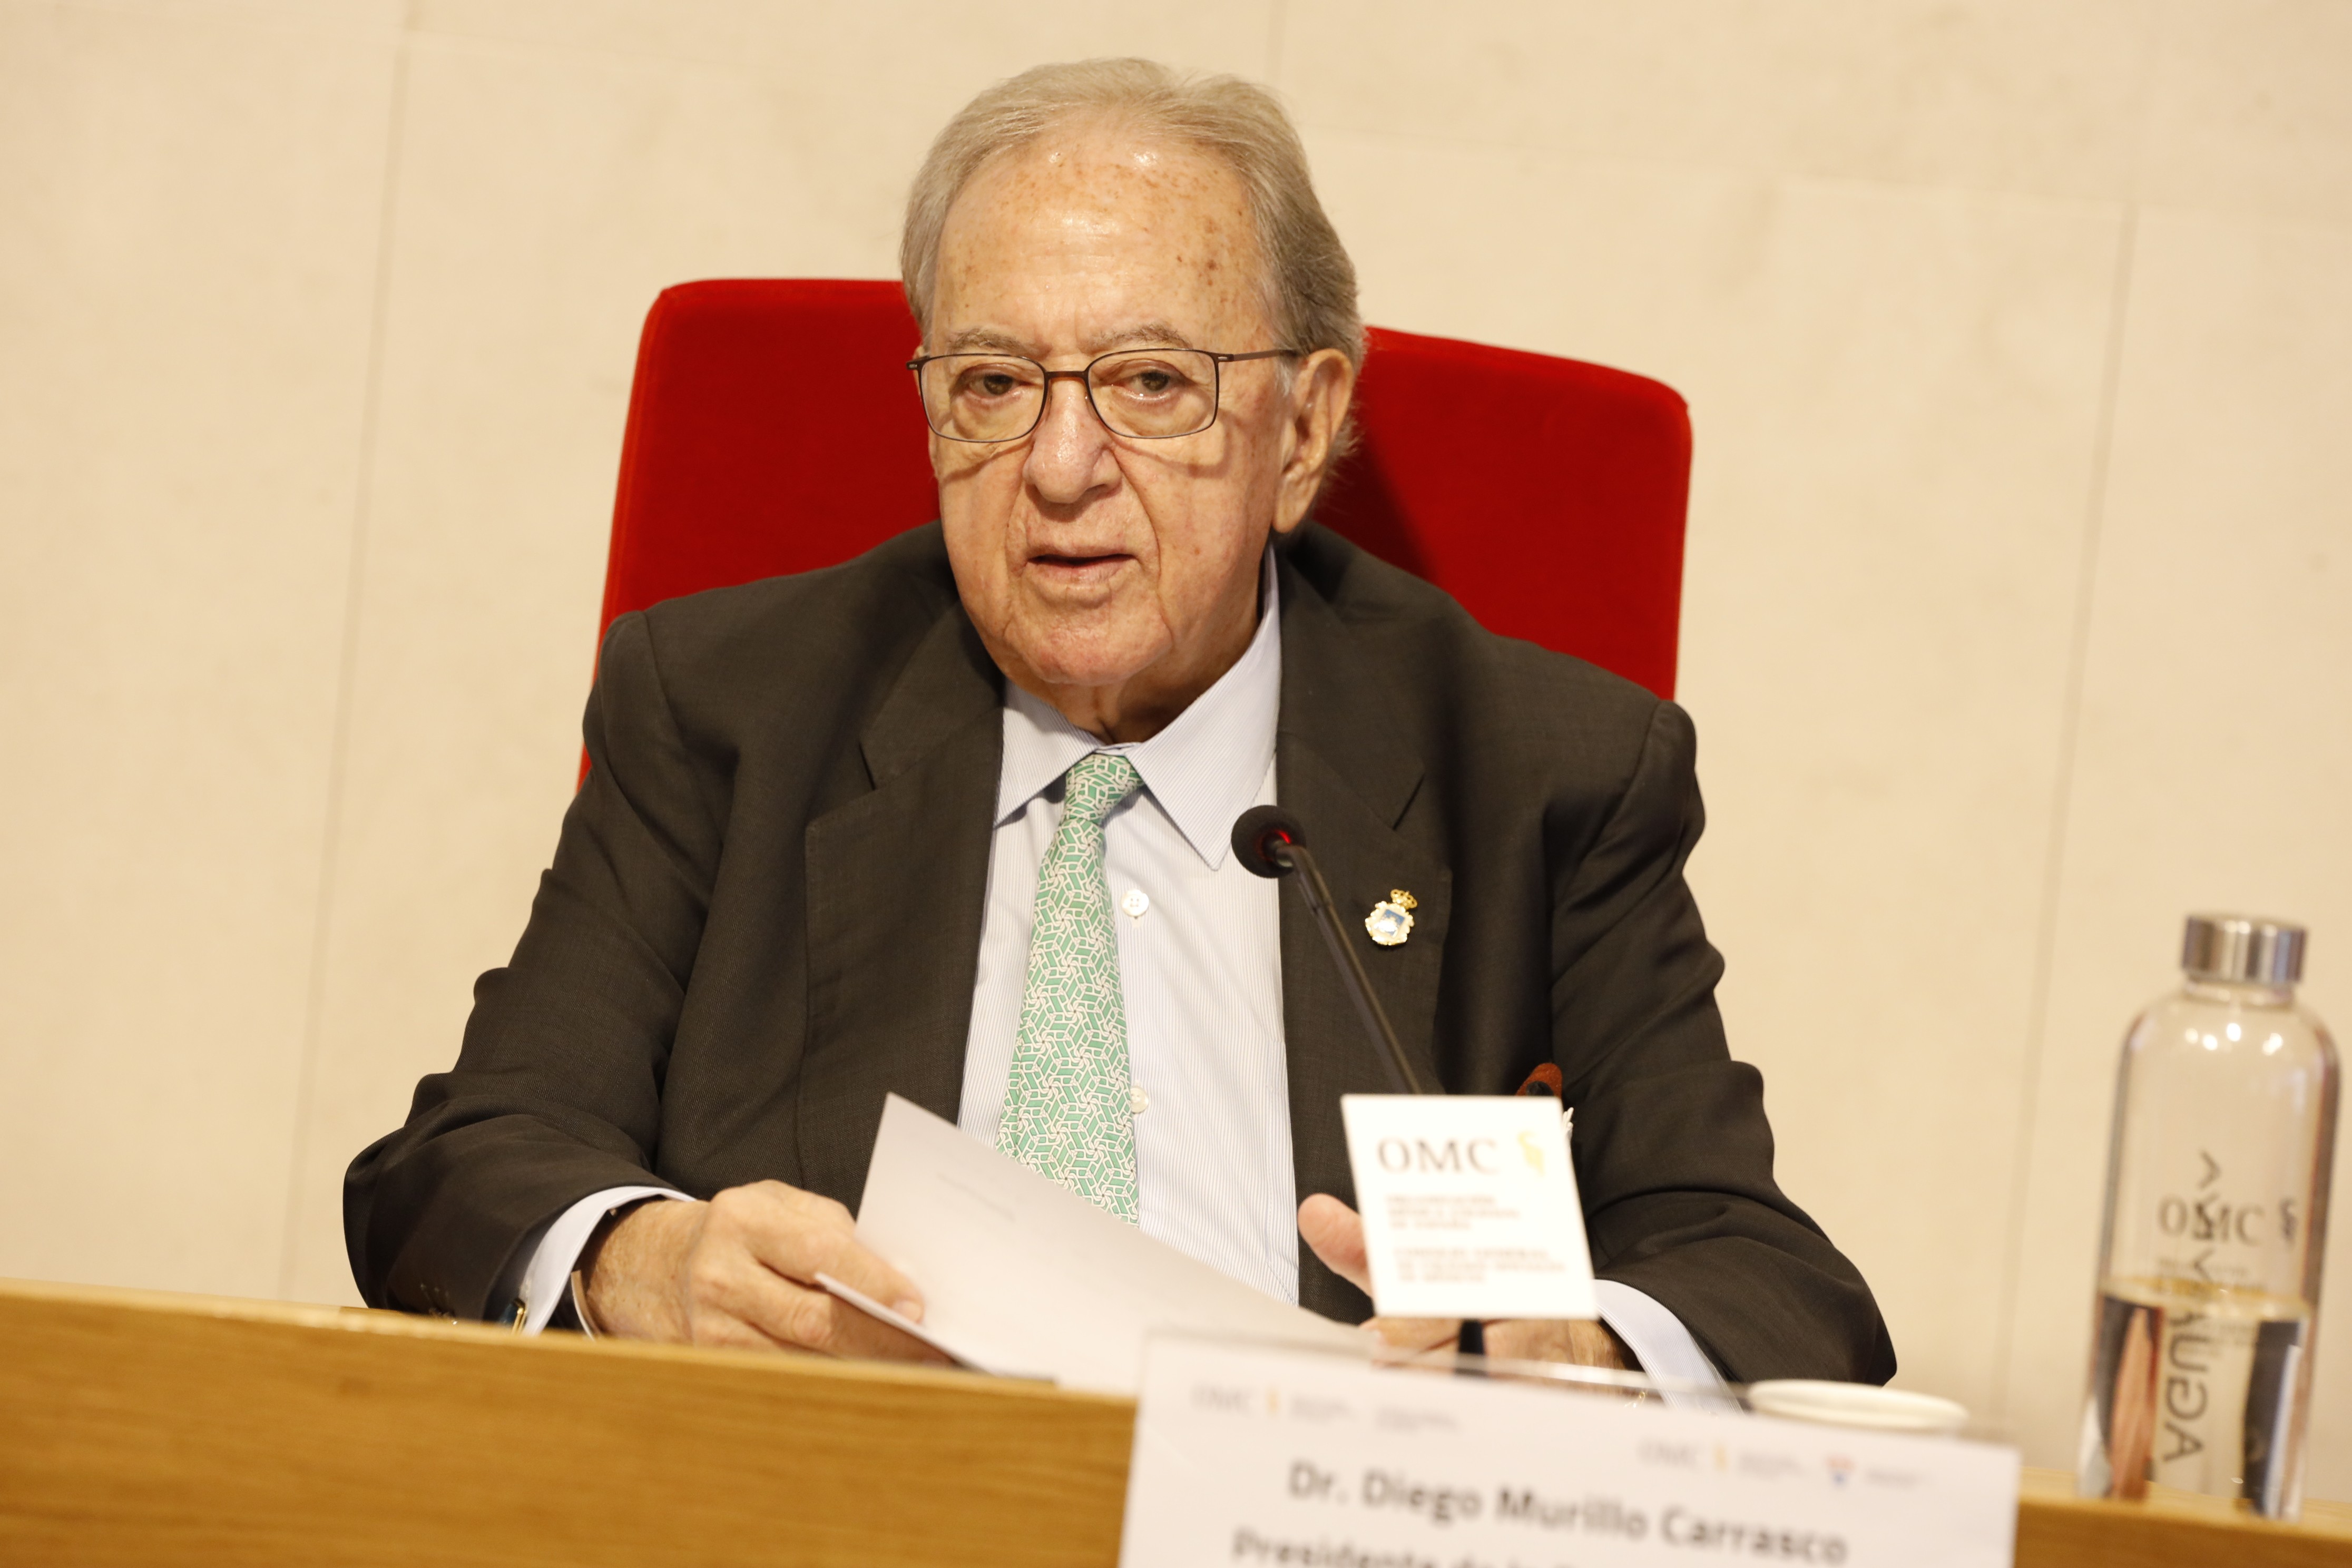 La Fundación AMA, presidida por Diego Murillo, aprueba por unanimidad las cuentas anuales de 2022.